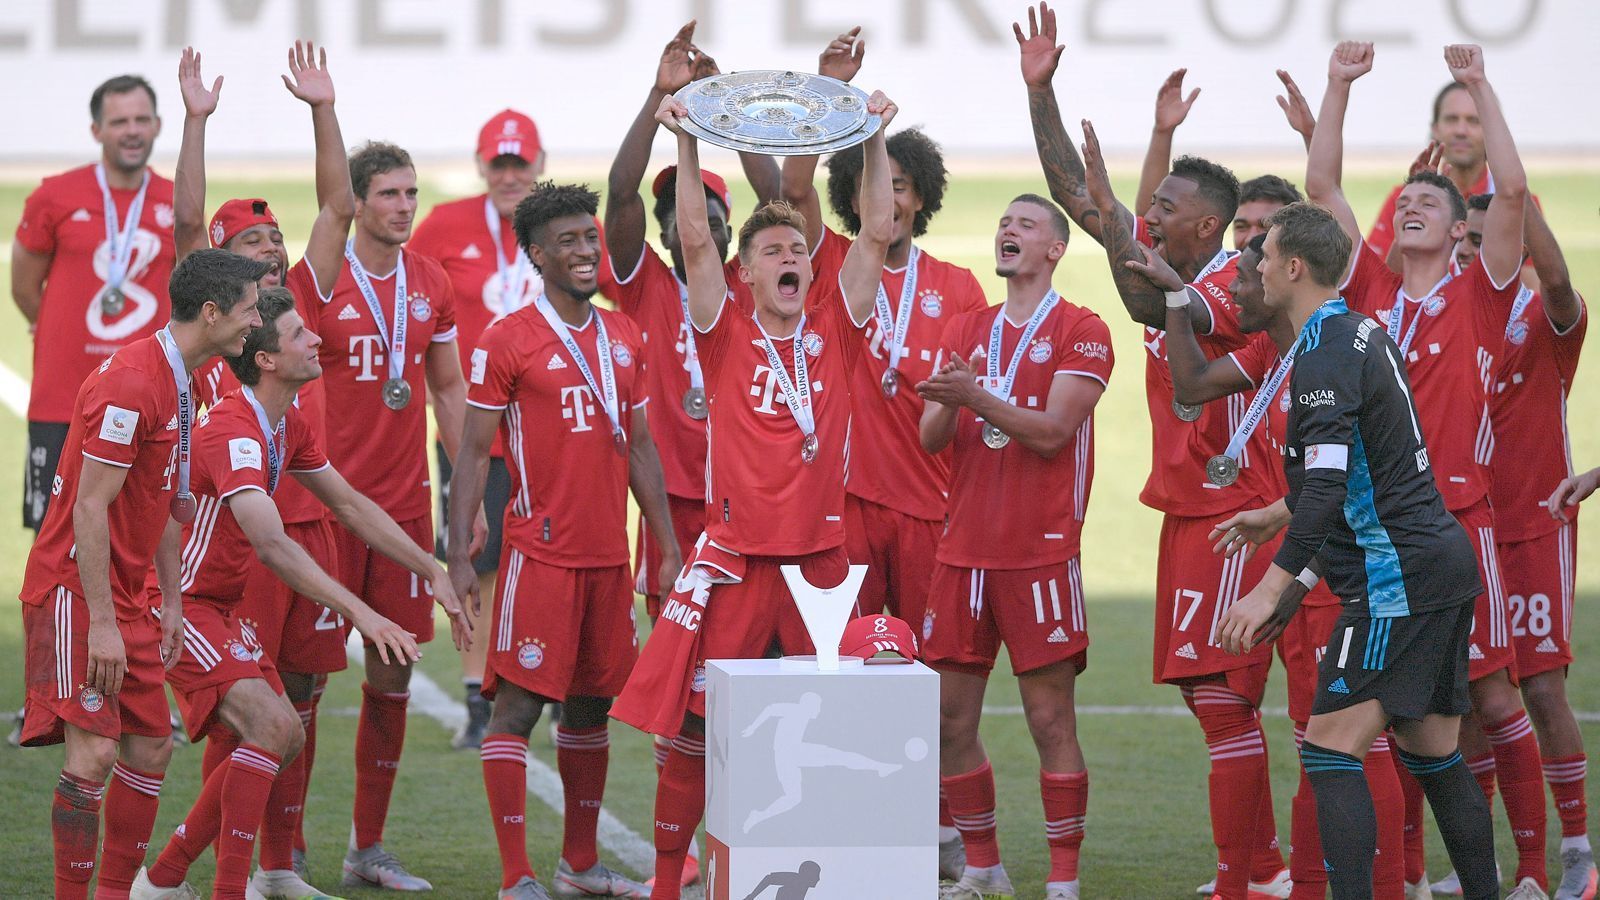 
                <strong>Gewinner: FC Bayern München</strong><br>
                Es war ein Jahr wie gemalt. Der FC Bayern München brauchte nicht allzu lange, um nach dem durchwachsenen Saisonstart 2019 wieder in die Spur zu finden und lieferte von dort an nahezu Woche für Woche eine Weltklasse-Leistung ab. Nach 32 Spielen war den Bayern die achte Meisterschaft nicht mehr zu nehmen. Mit 100 Toren erzielten die Bayern die meisten, kassierten mit 32 die wenigsten und gewannen zum Ende der Saison 13 Mal in Serie. Doch die Krönung folgte in Lissabon: Beim Finalturnier der Champions League ließen sich die Bayern auch durch die lange Corona-Pause nicht aus der Form bringen und stemmten am Ende den Henkelpott in die Luft. Besonders eine Person hatte einen entscheidenden Anteil am erfolgreichen Bayern-Jahr: Trainer Hansi Flick.
              